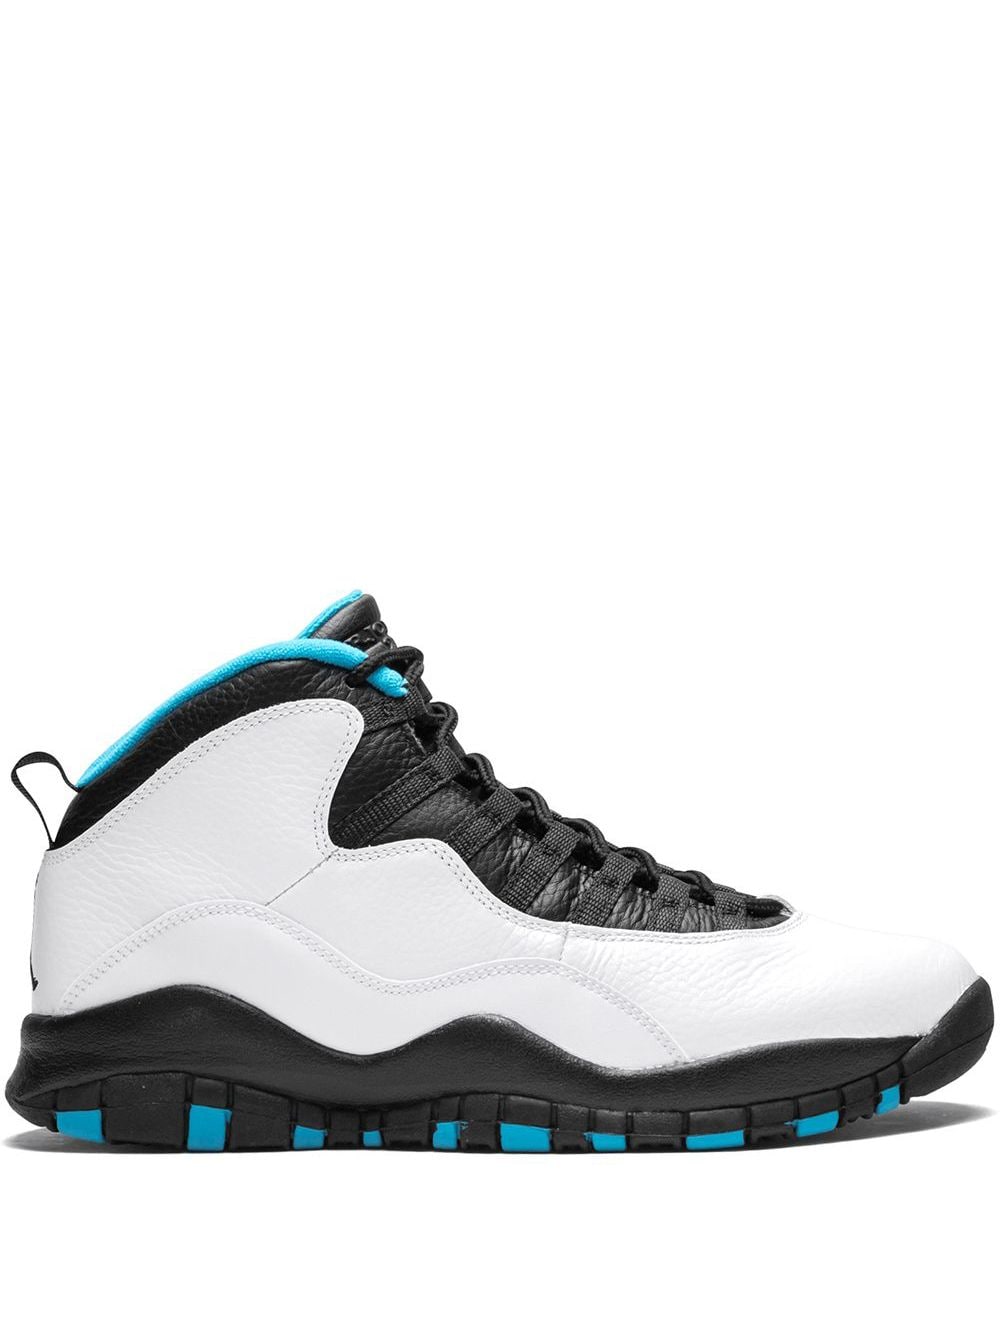 Jordan Air Jordan Retro 10 "Powder Blue" sneakers - White